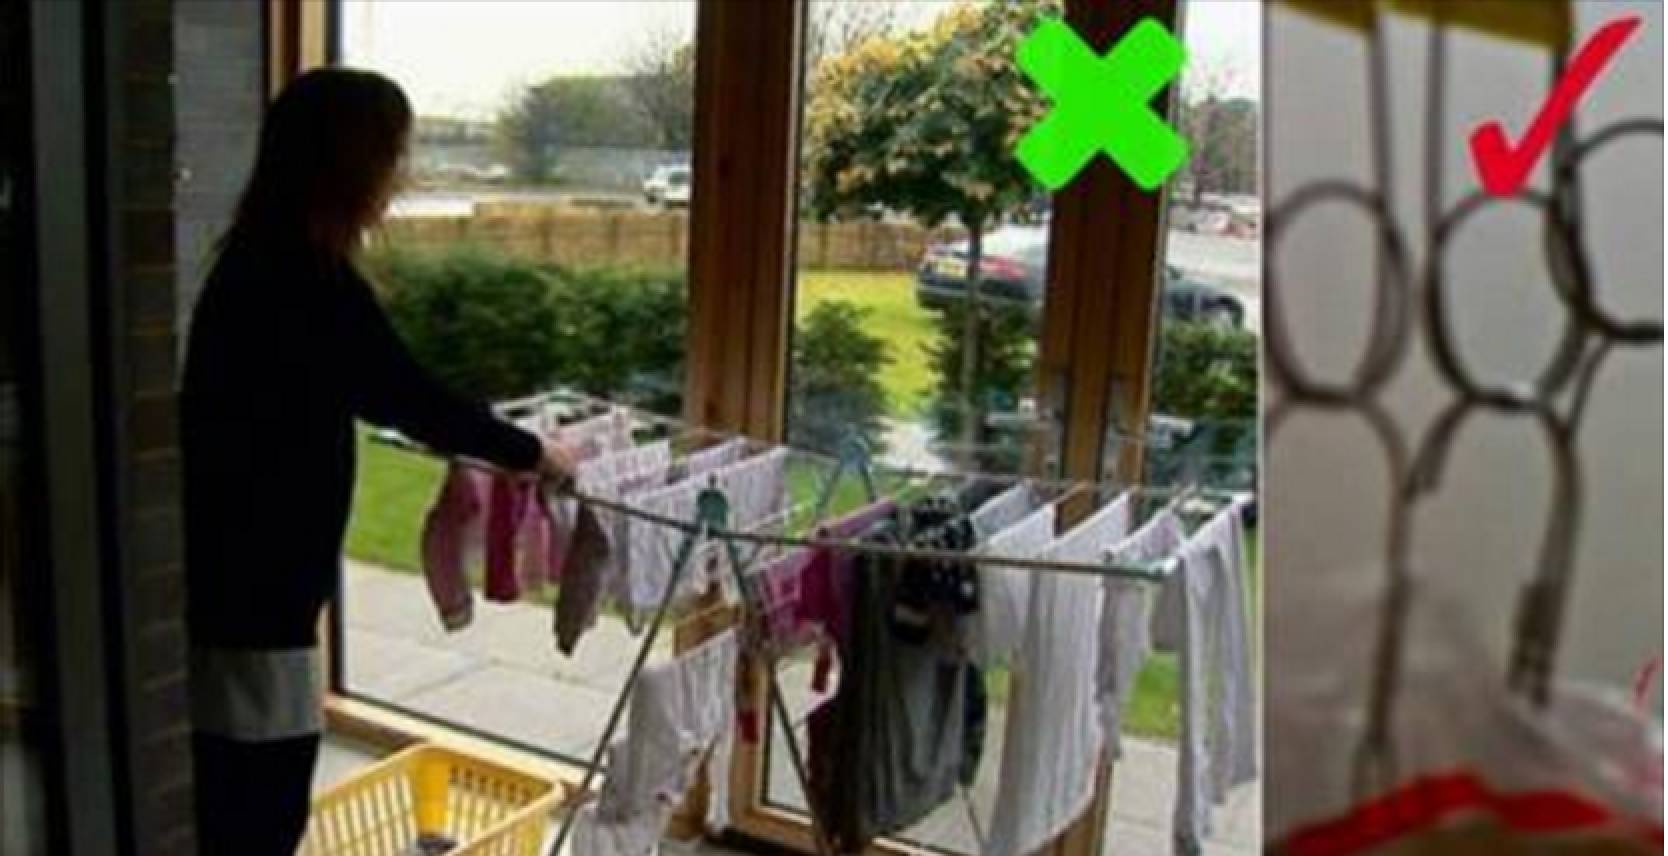 Как быстро высушить одежду: 15 лучших способов после стирки в домашних условиях